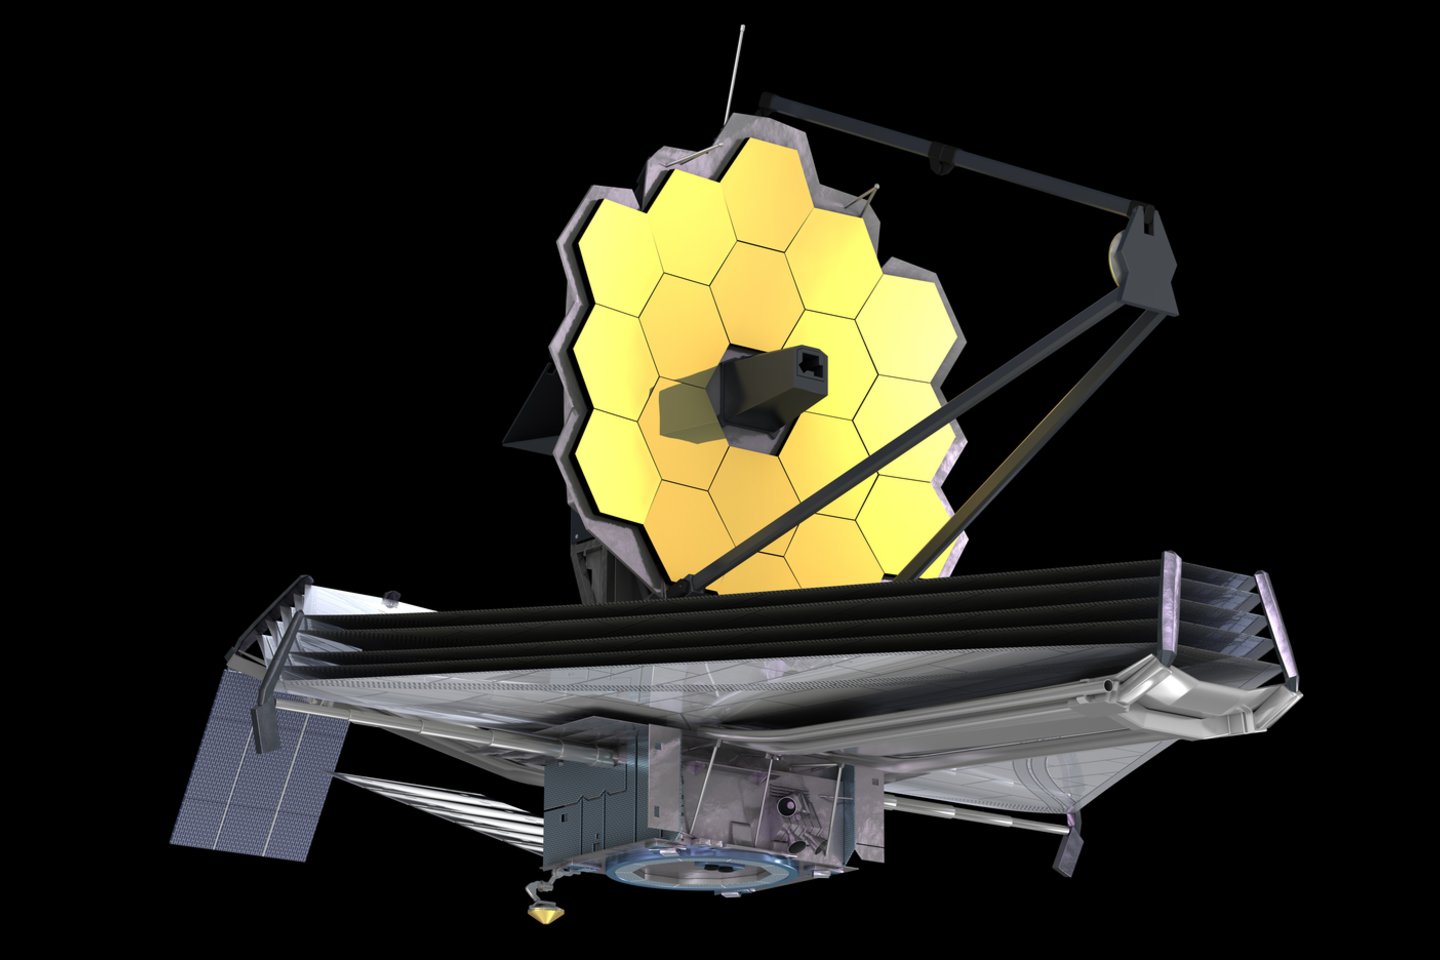  Paaiškėjo, kad smulki kosminė uoliena padarė didelį poveikį neseniai pradėjusiam veikti NASA tolimojo kosmoso teleskopui.<br> 123rf iliustr.